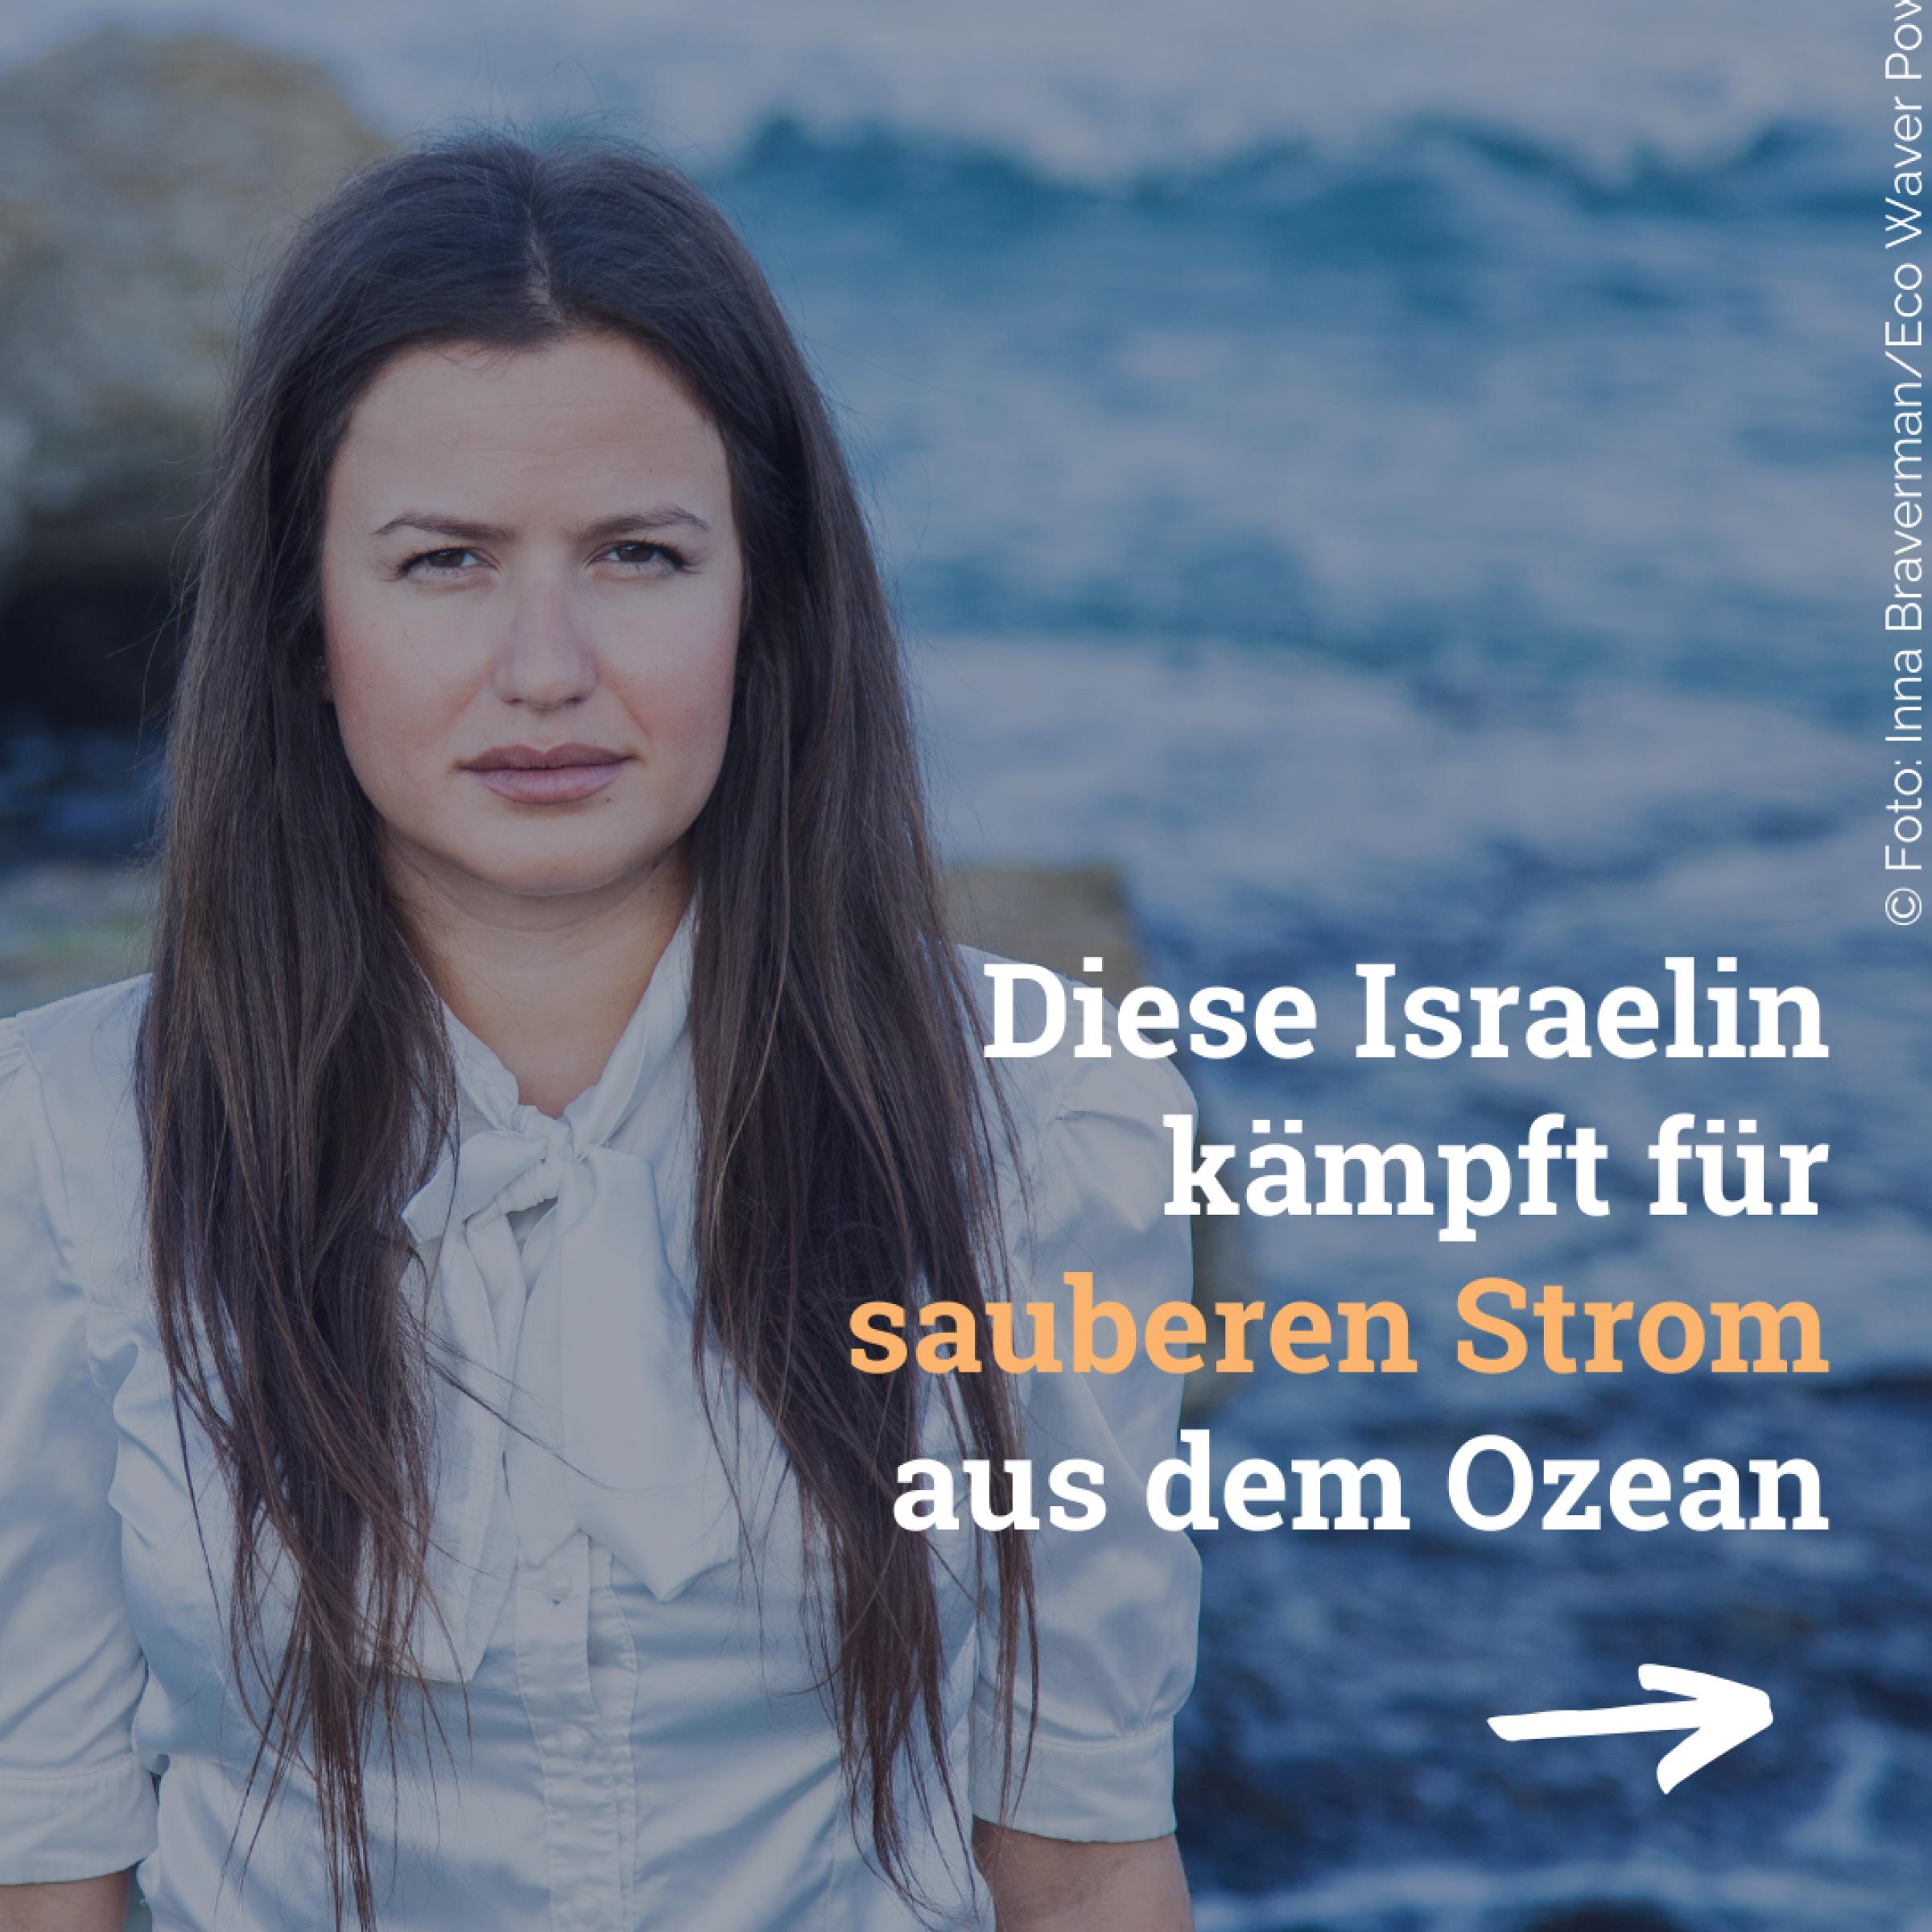 Das Bild zeigt die junge Frau Inna Bravermann in einer weißen Bluse vor dem blauen Ozean. Sie blickt in die Kamera. Inna Bravermann ist Pionierin in der Wellenenergie